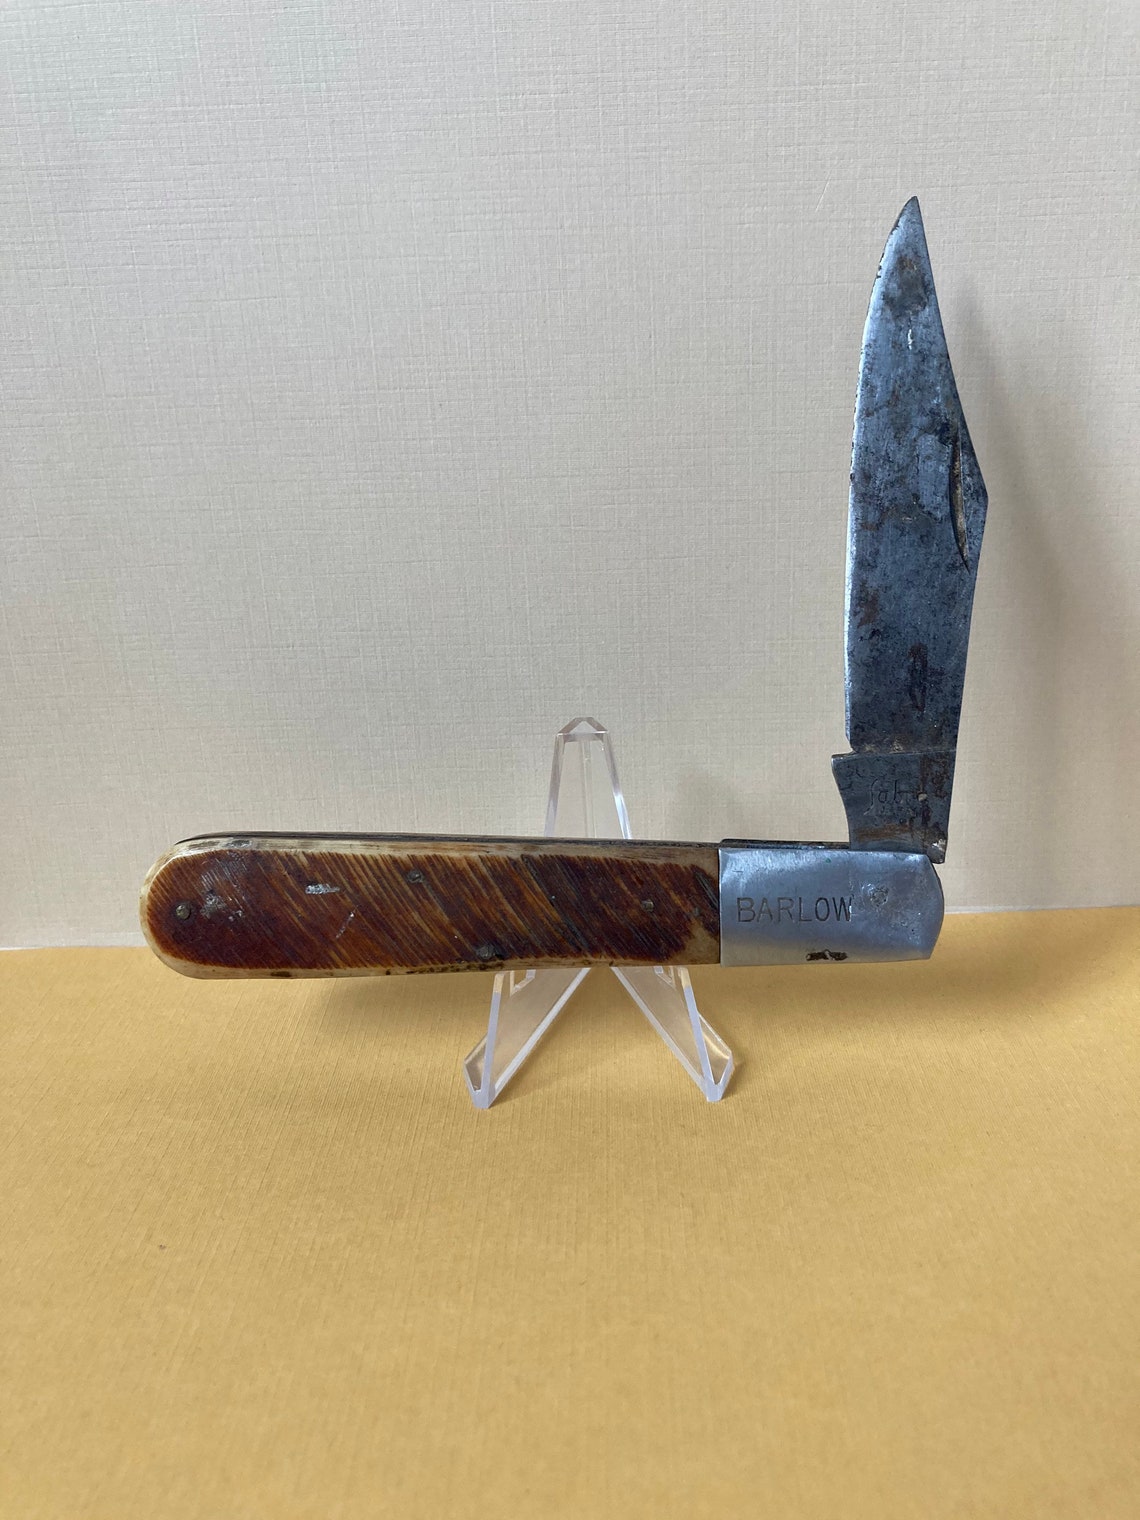 Vintage Large Single Blade Sabre Barlow Knife | Etsy